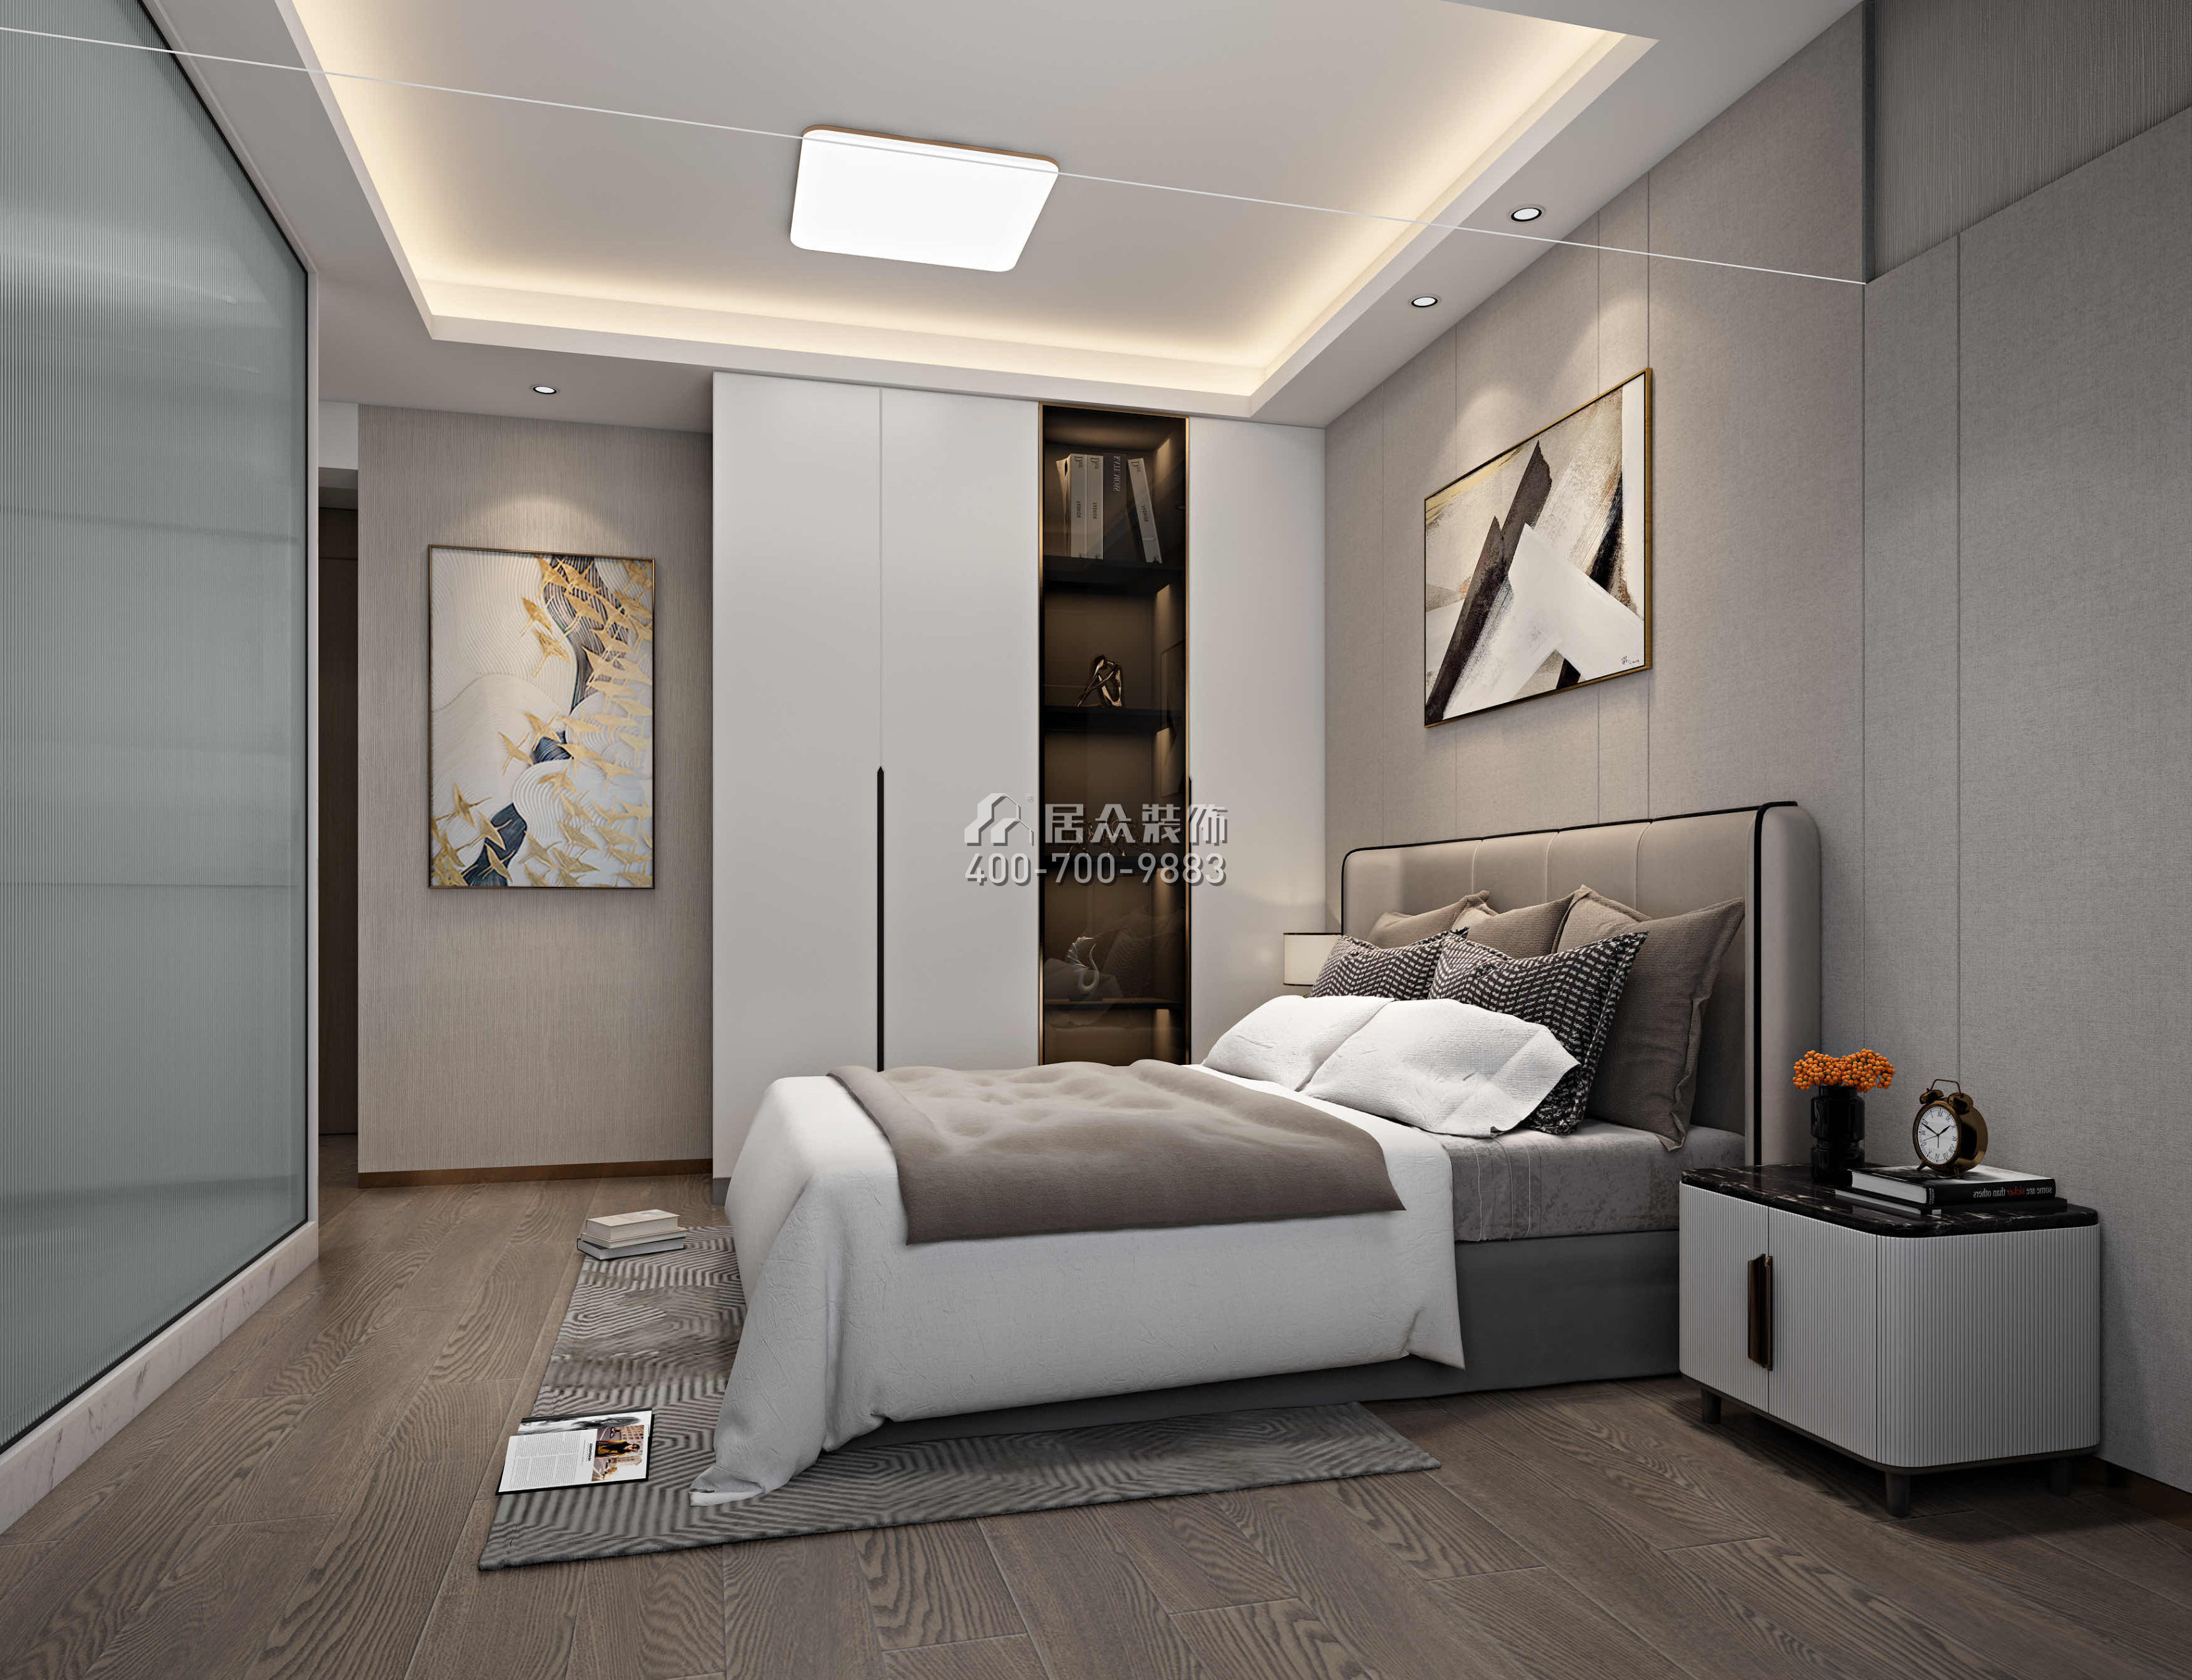 新天鵝堡122平方米現代簡約風格平層戶型臥室裝修效果圖